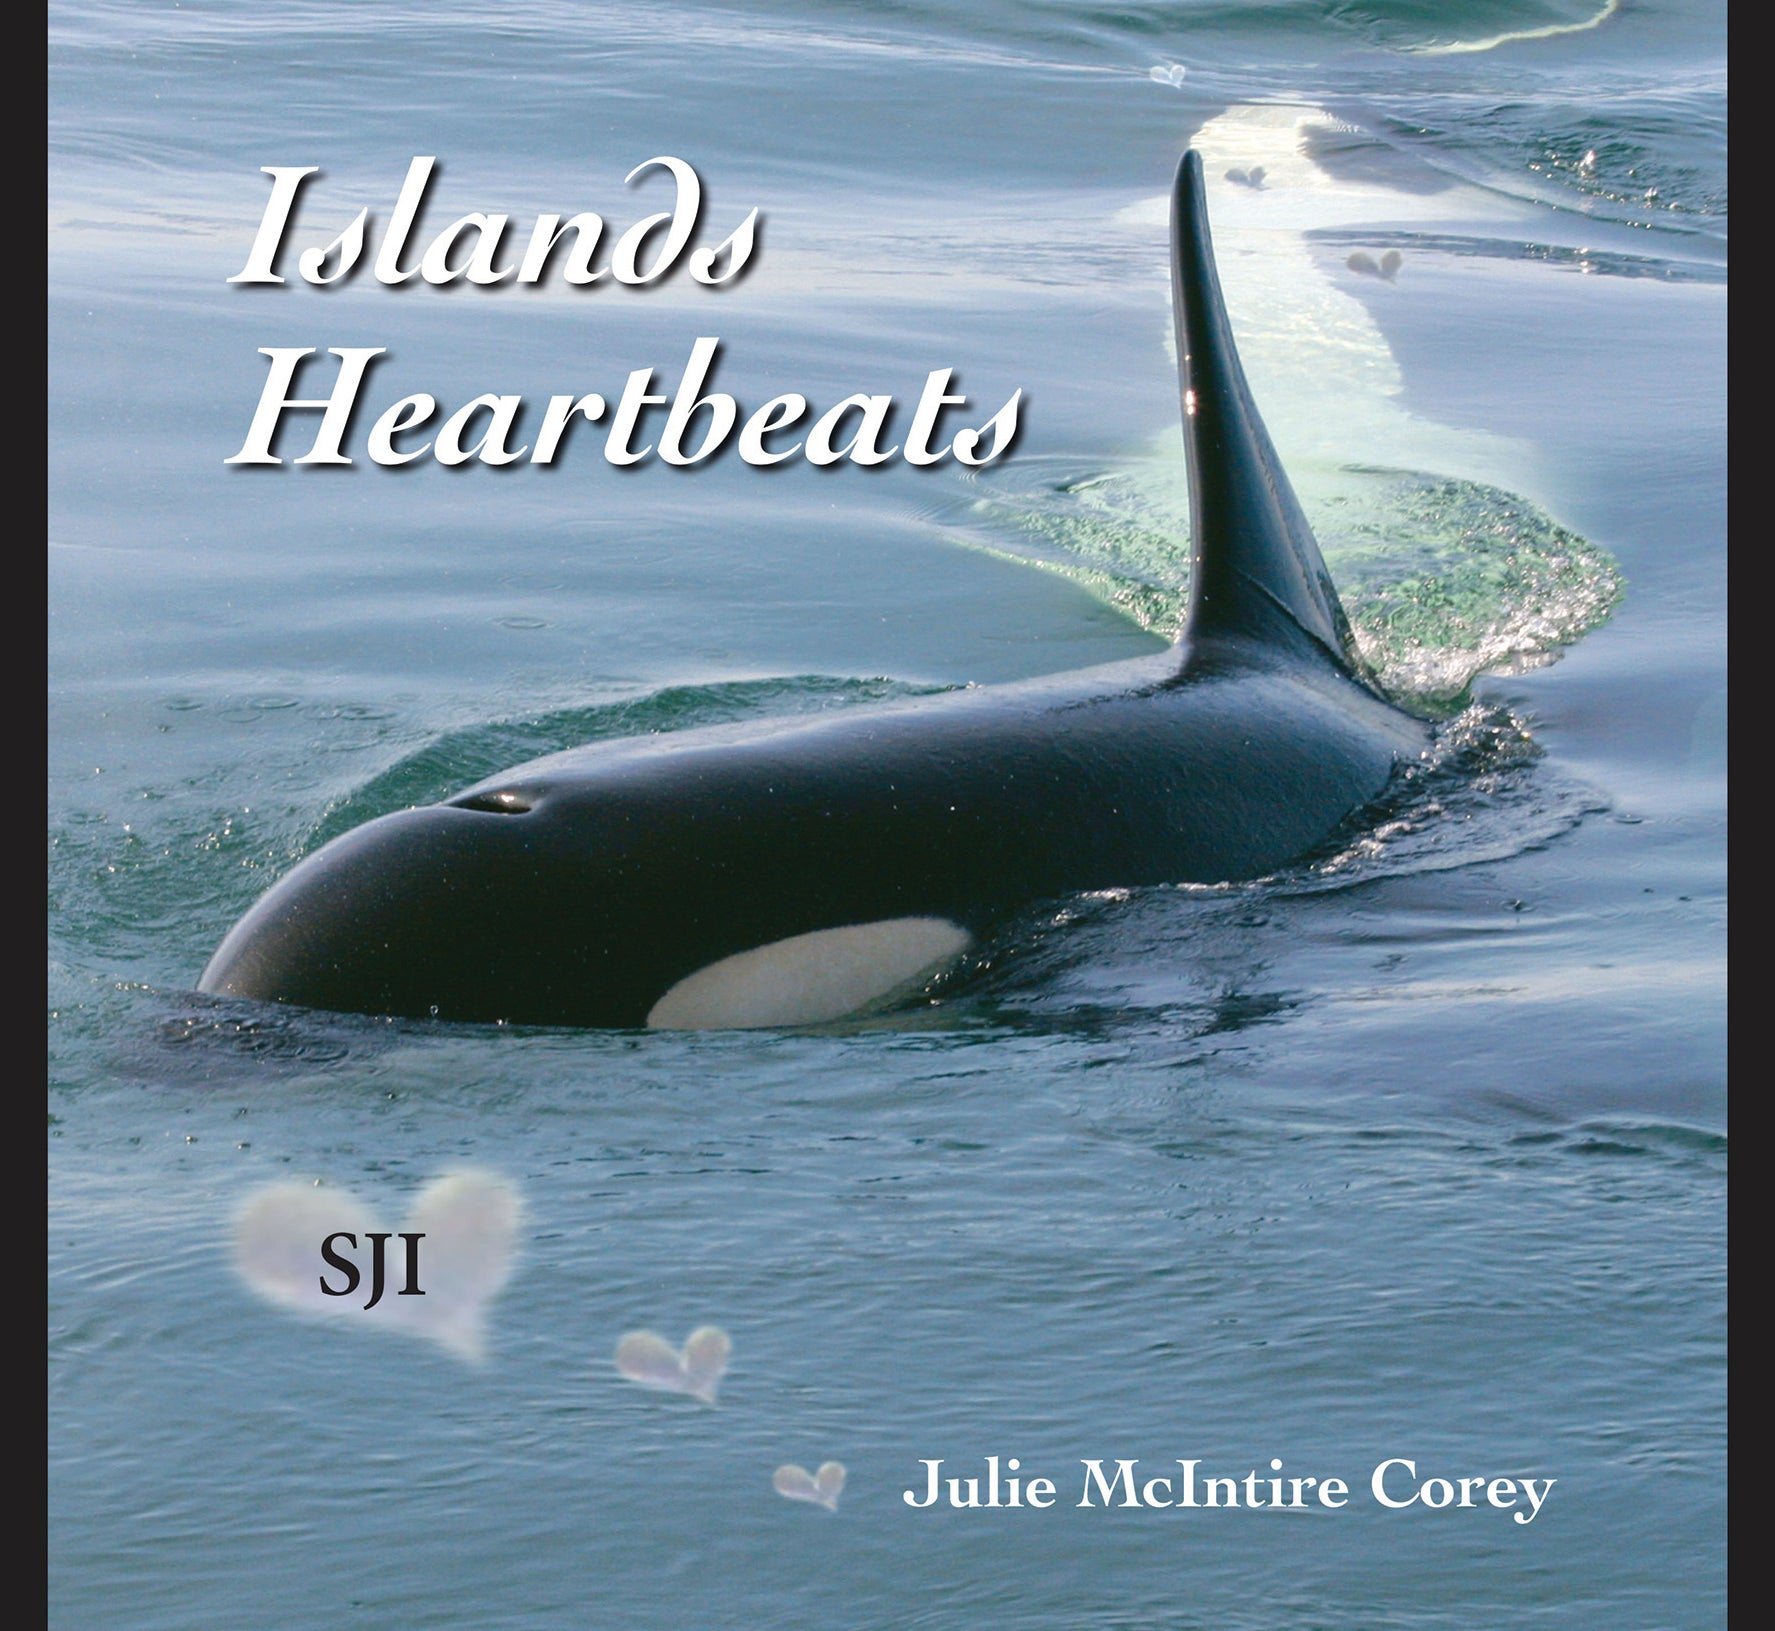 Islands Heartbeats SJI